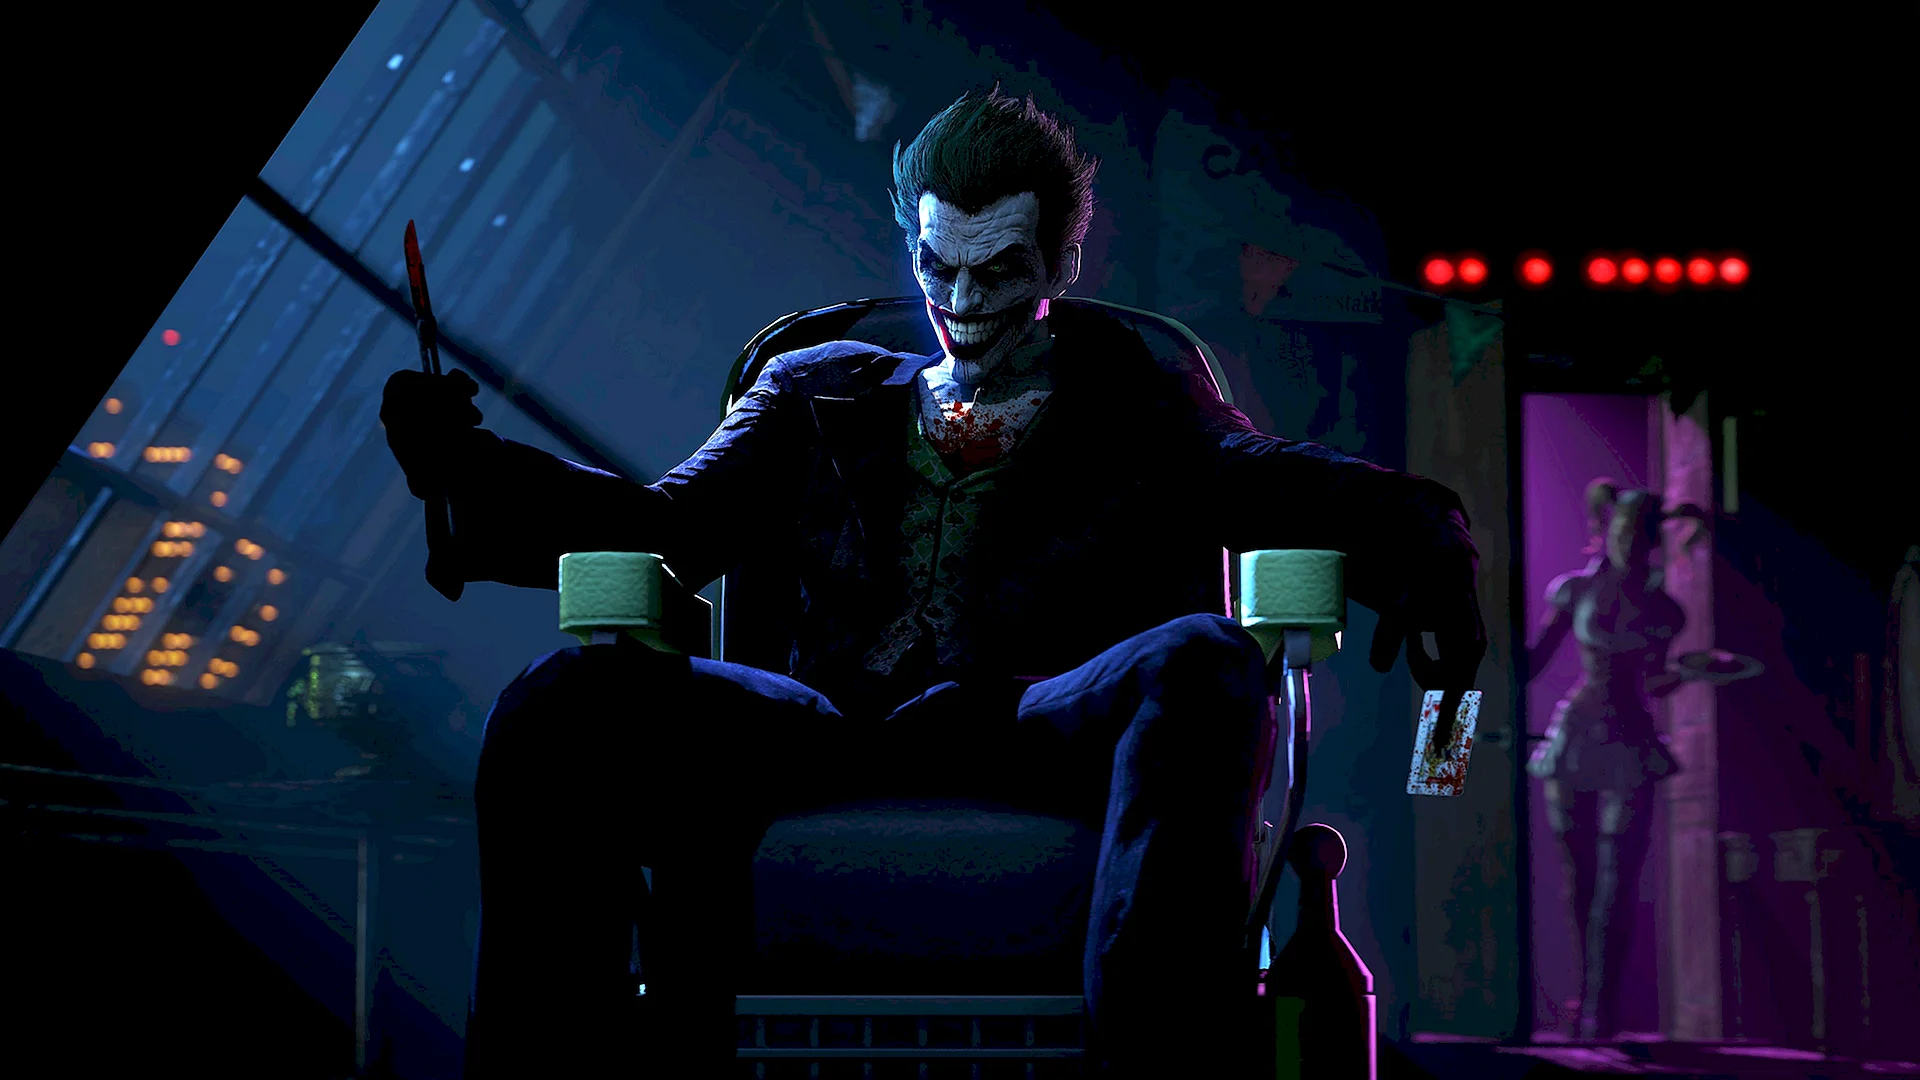 Joker Arkham Origins Wallpaper